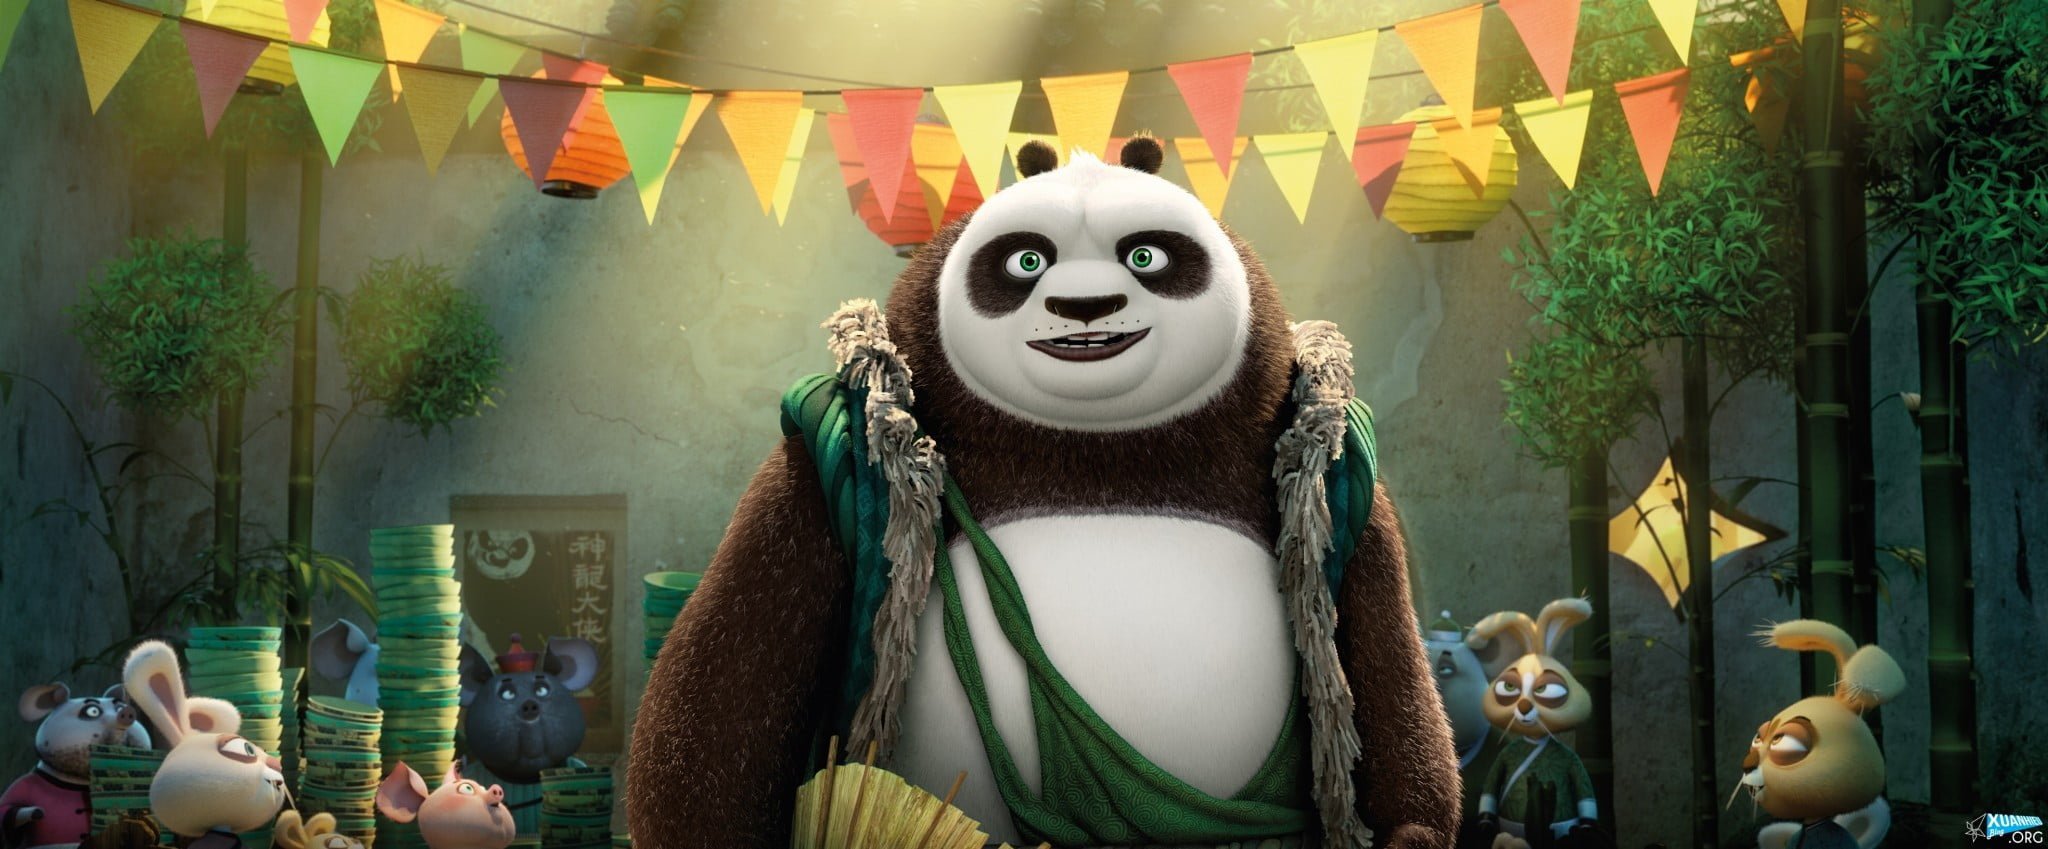 xem phim kung fu panda 3 full vietsub